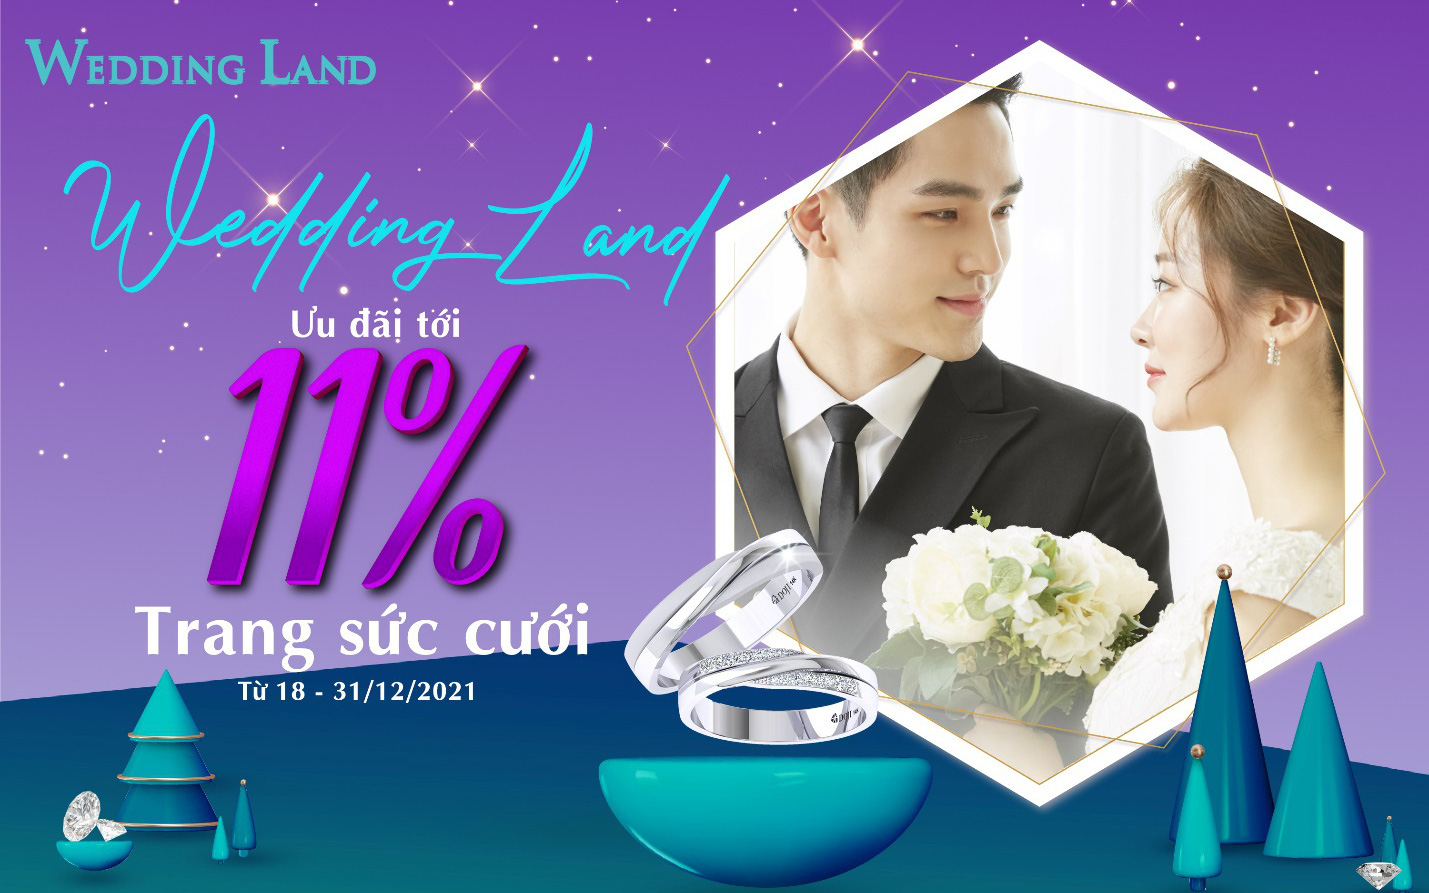 Đặc quyền dành tặng các cặp đôi tháng 12 - Ưu đãi tới 11% trang sức cưới Wedding Land